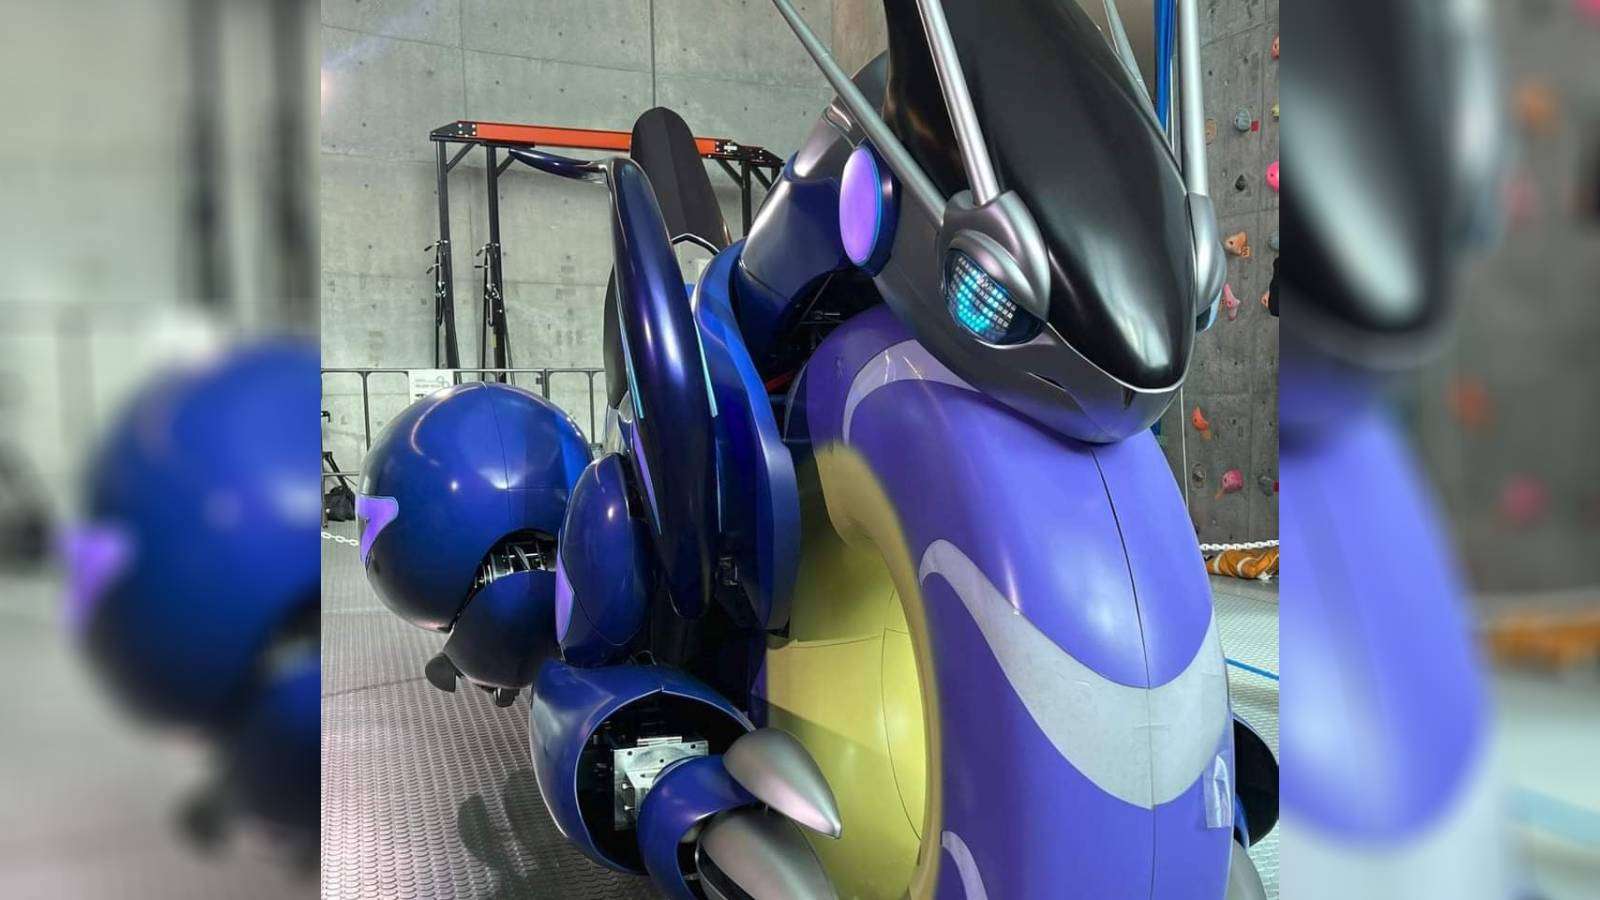 Pokemon Miraidon motorcycle